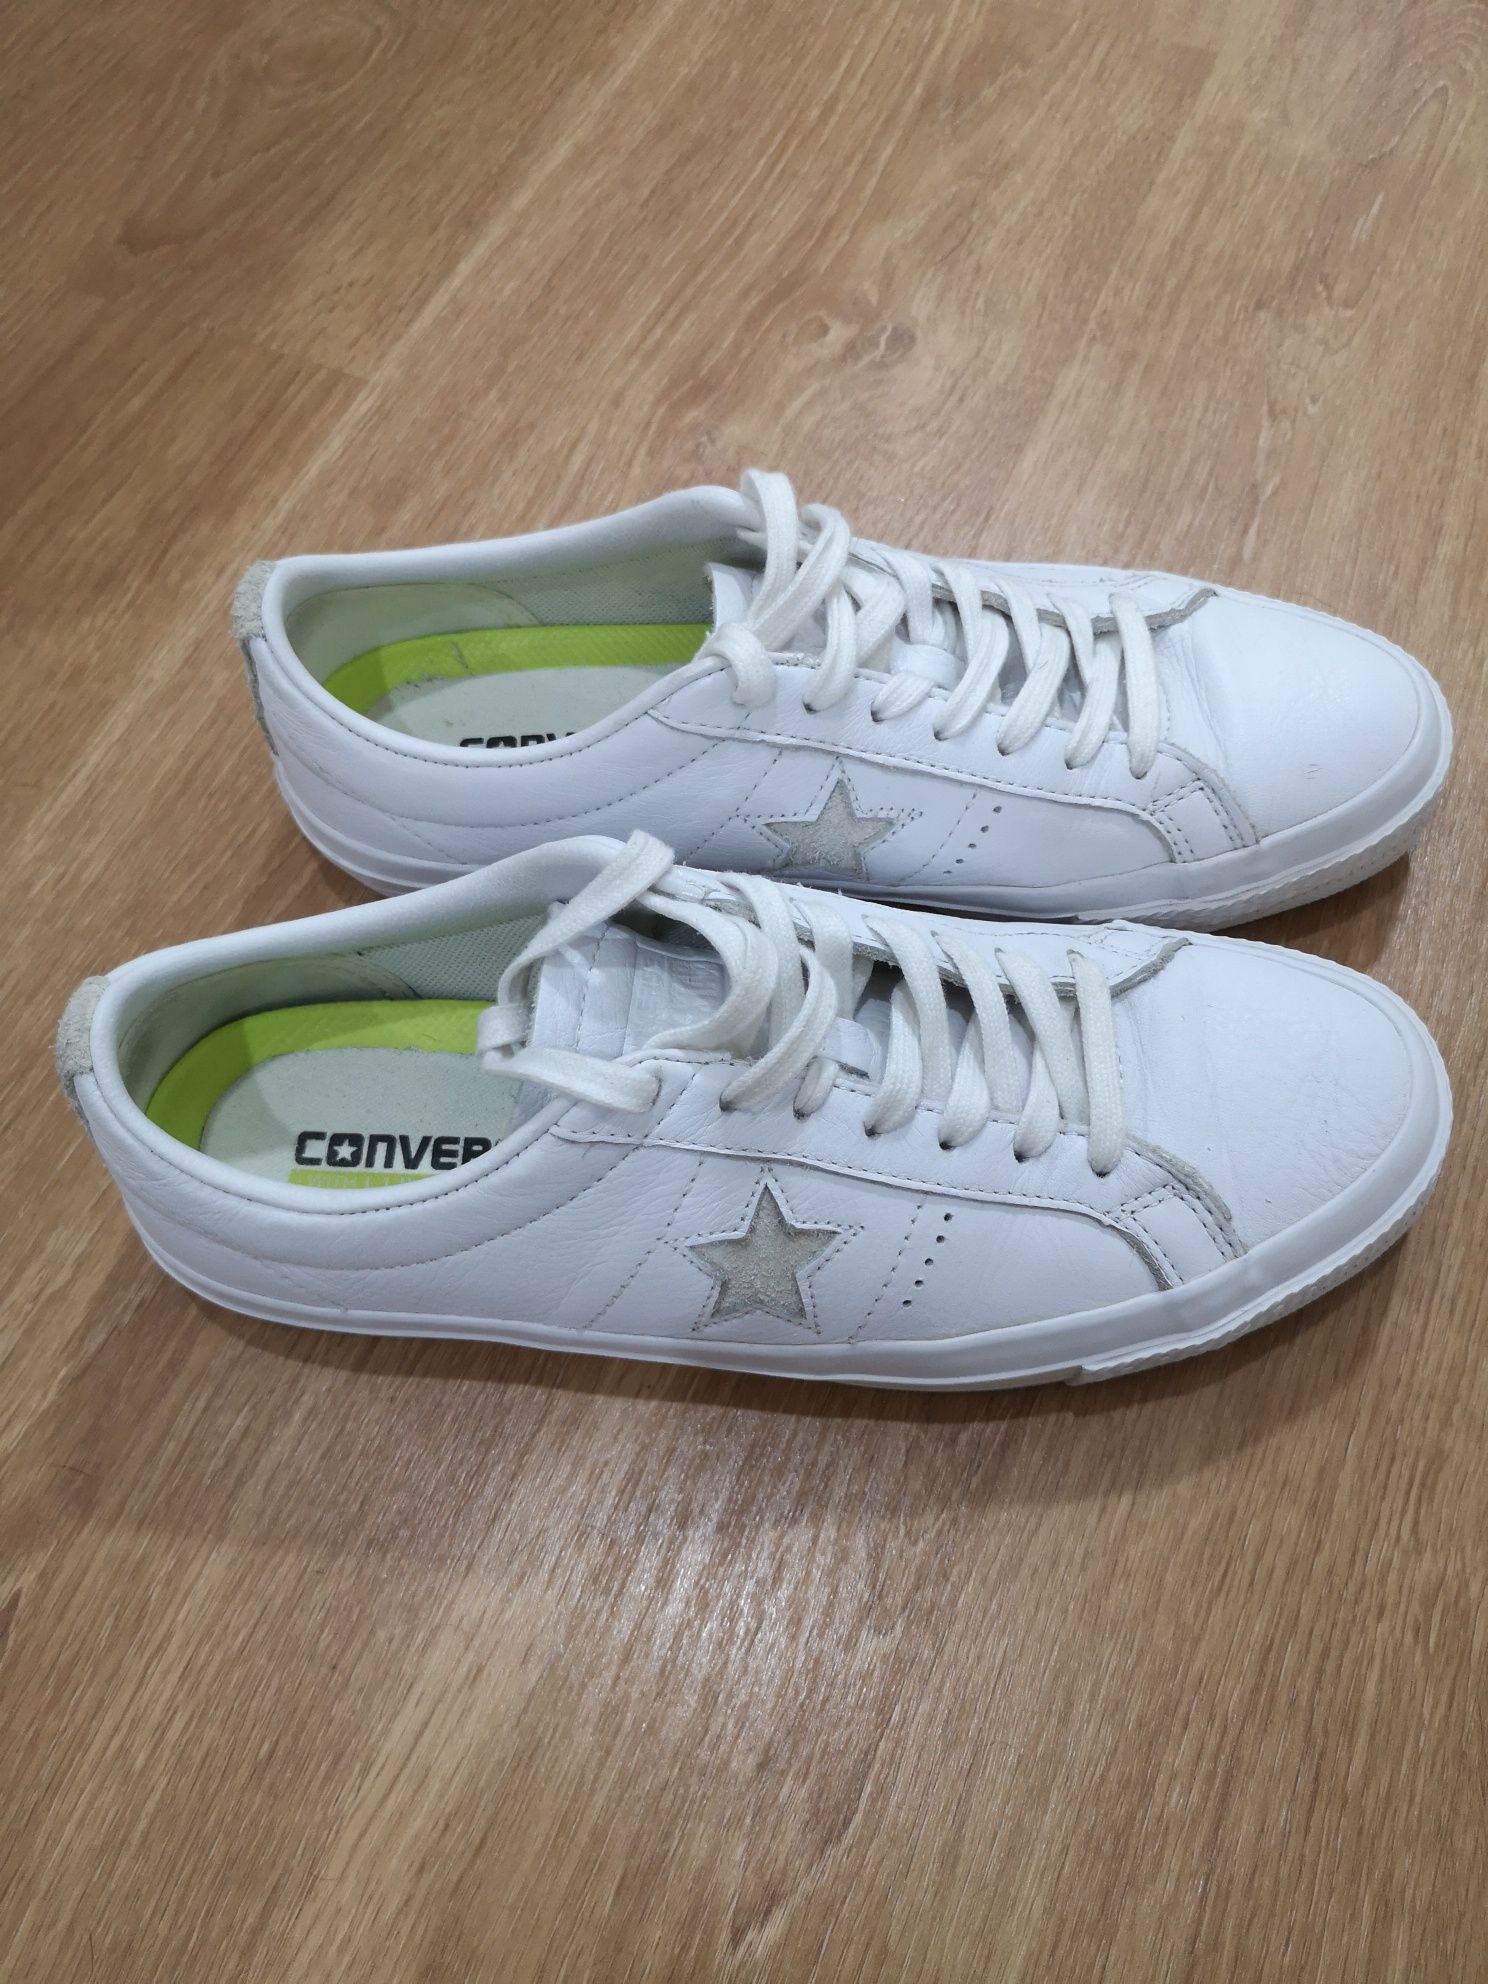 AllStar Converse